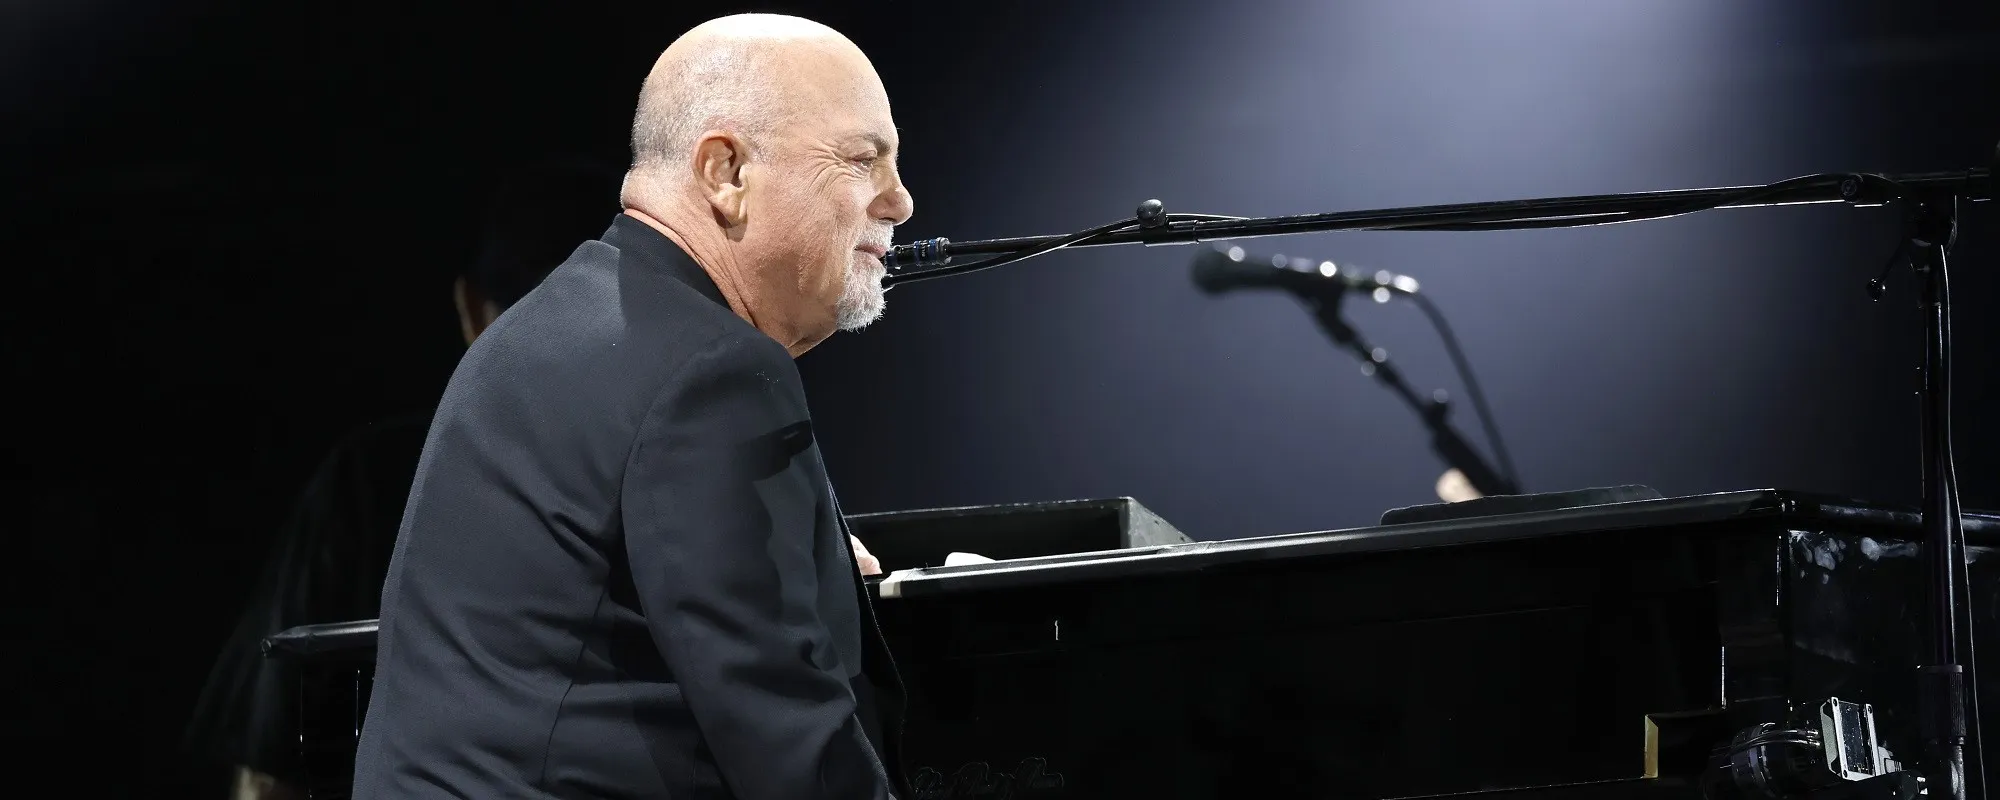 Billy Joel’s Comeback Is in Full Swing: Grammy Performance, Glastonbury Festival Rumors, & New Single